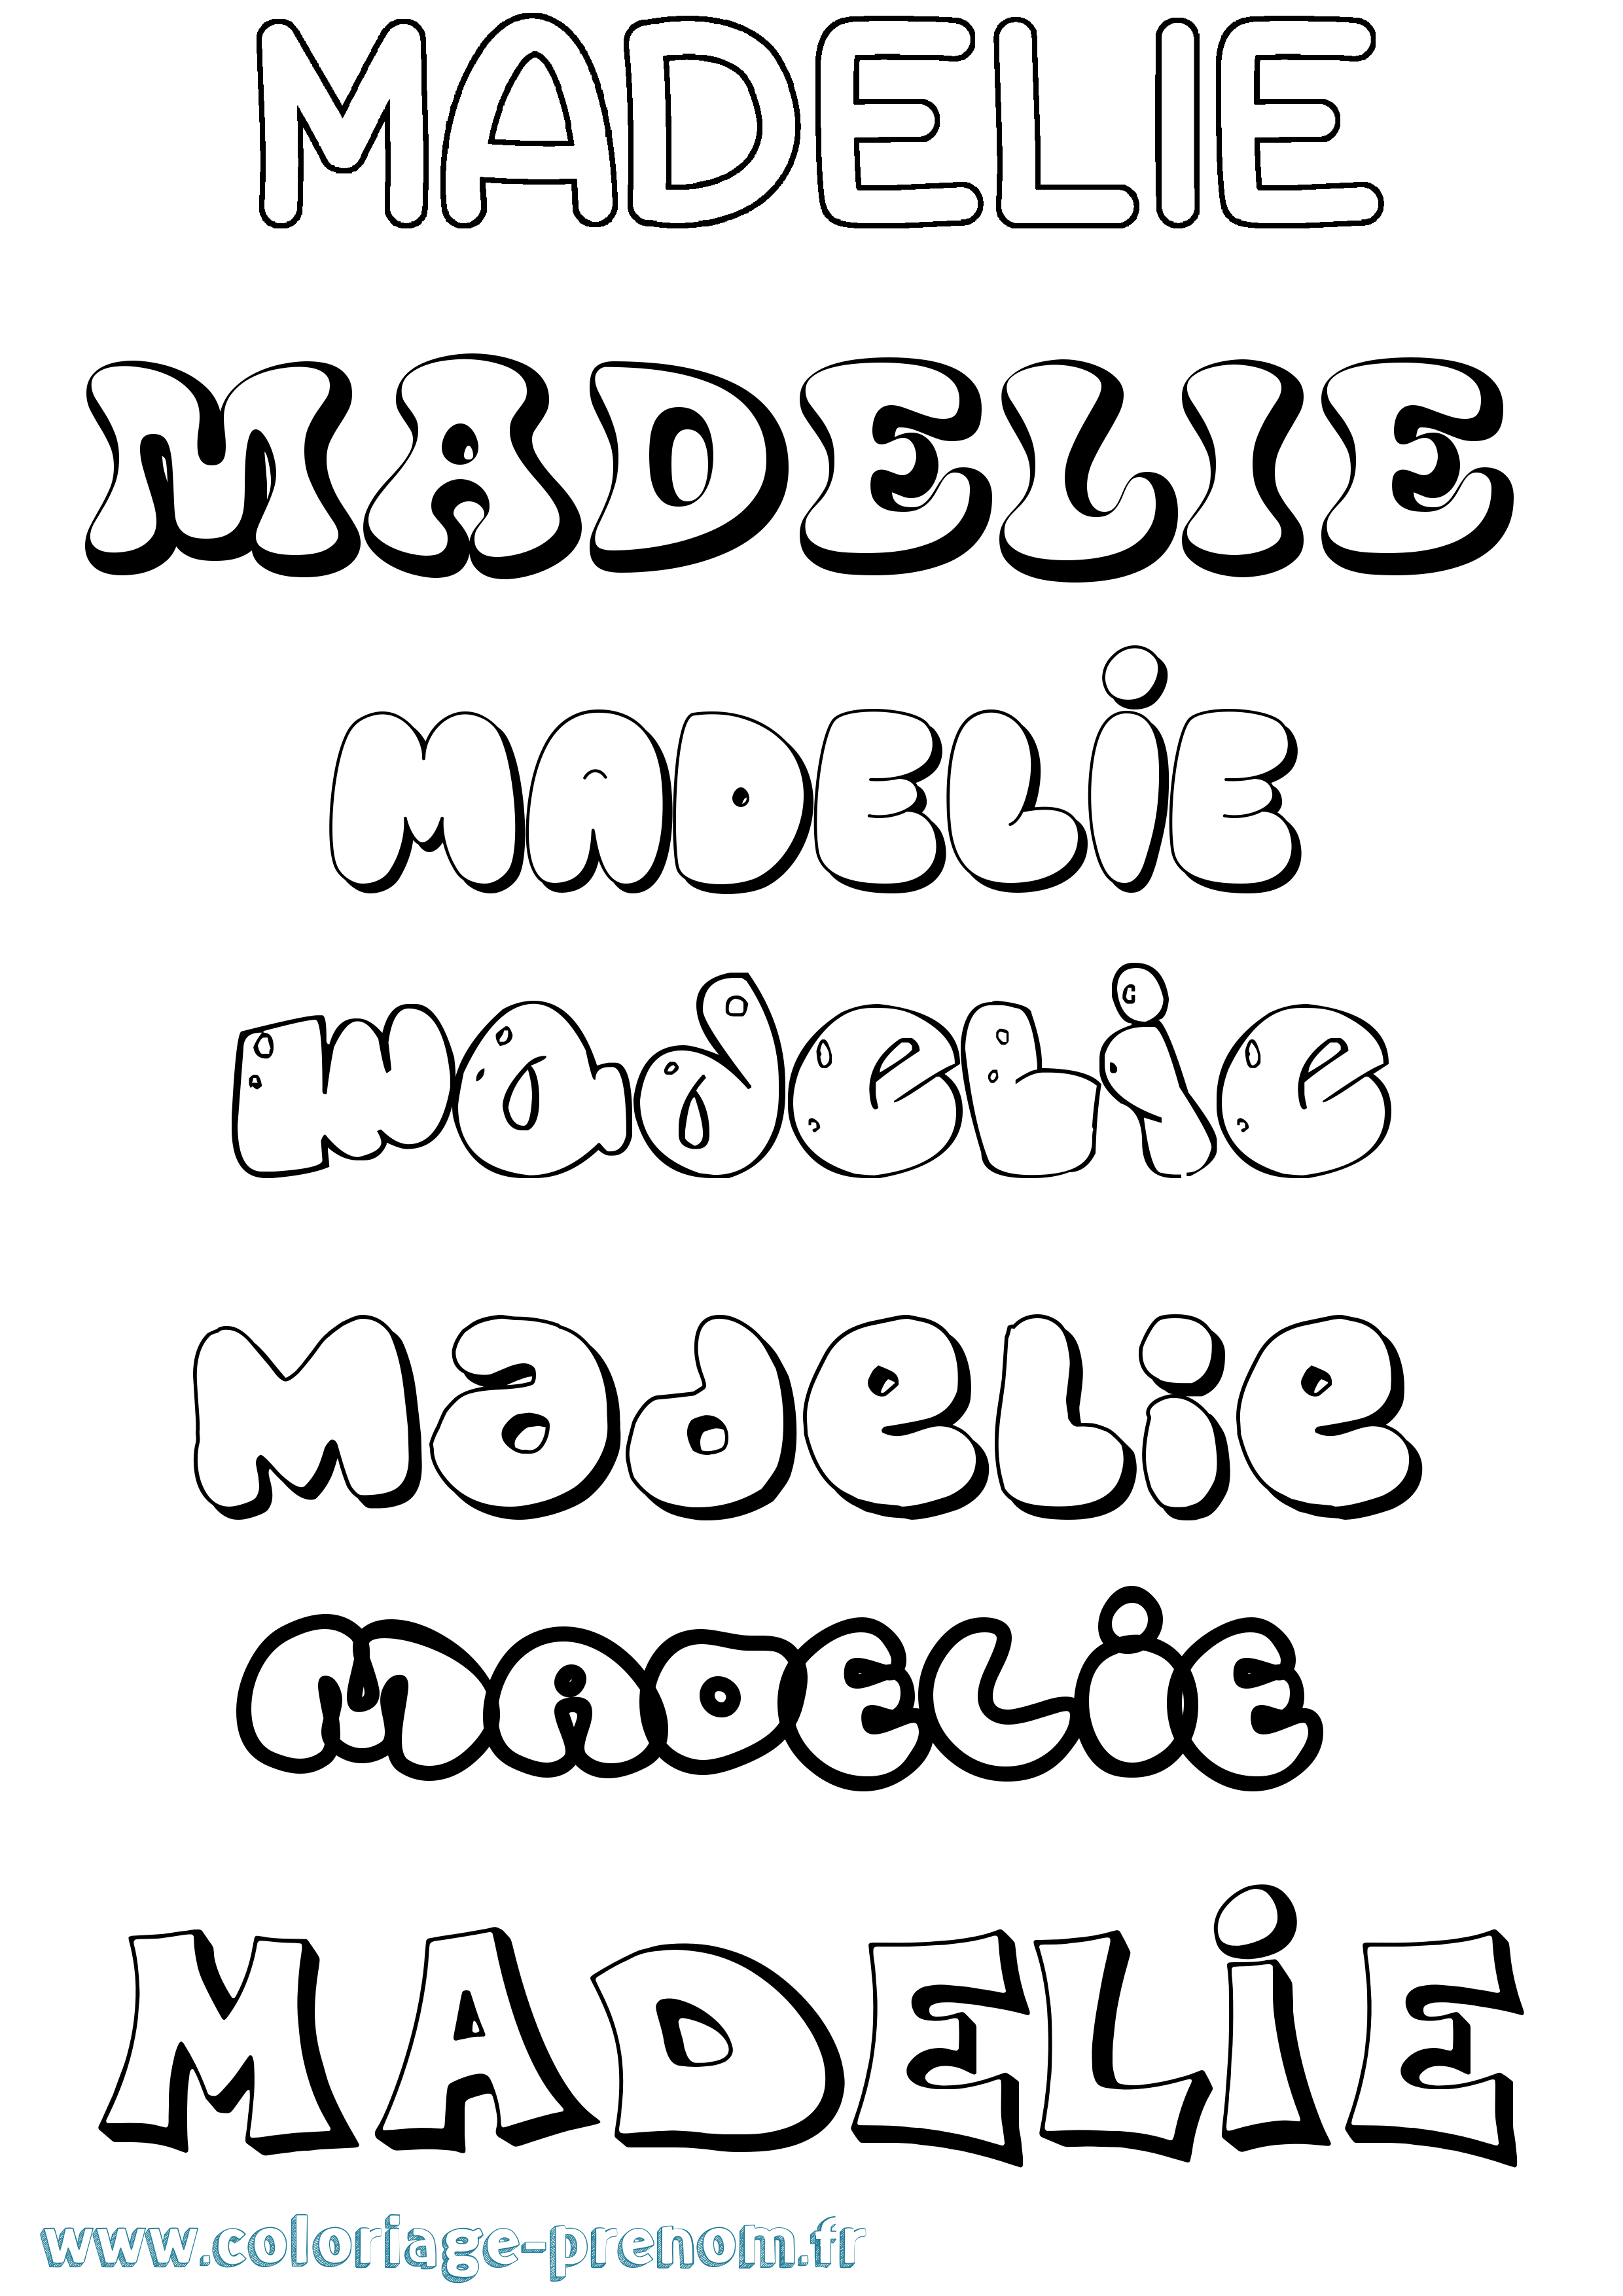 Coloriage prénom Madelie Bubble